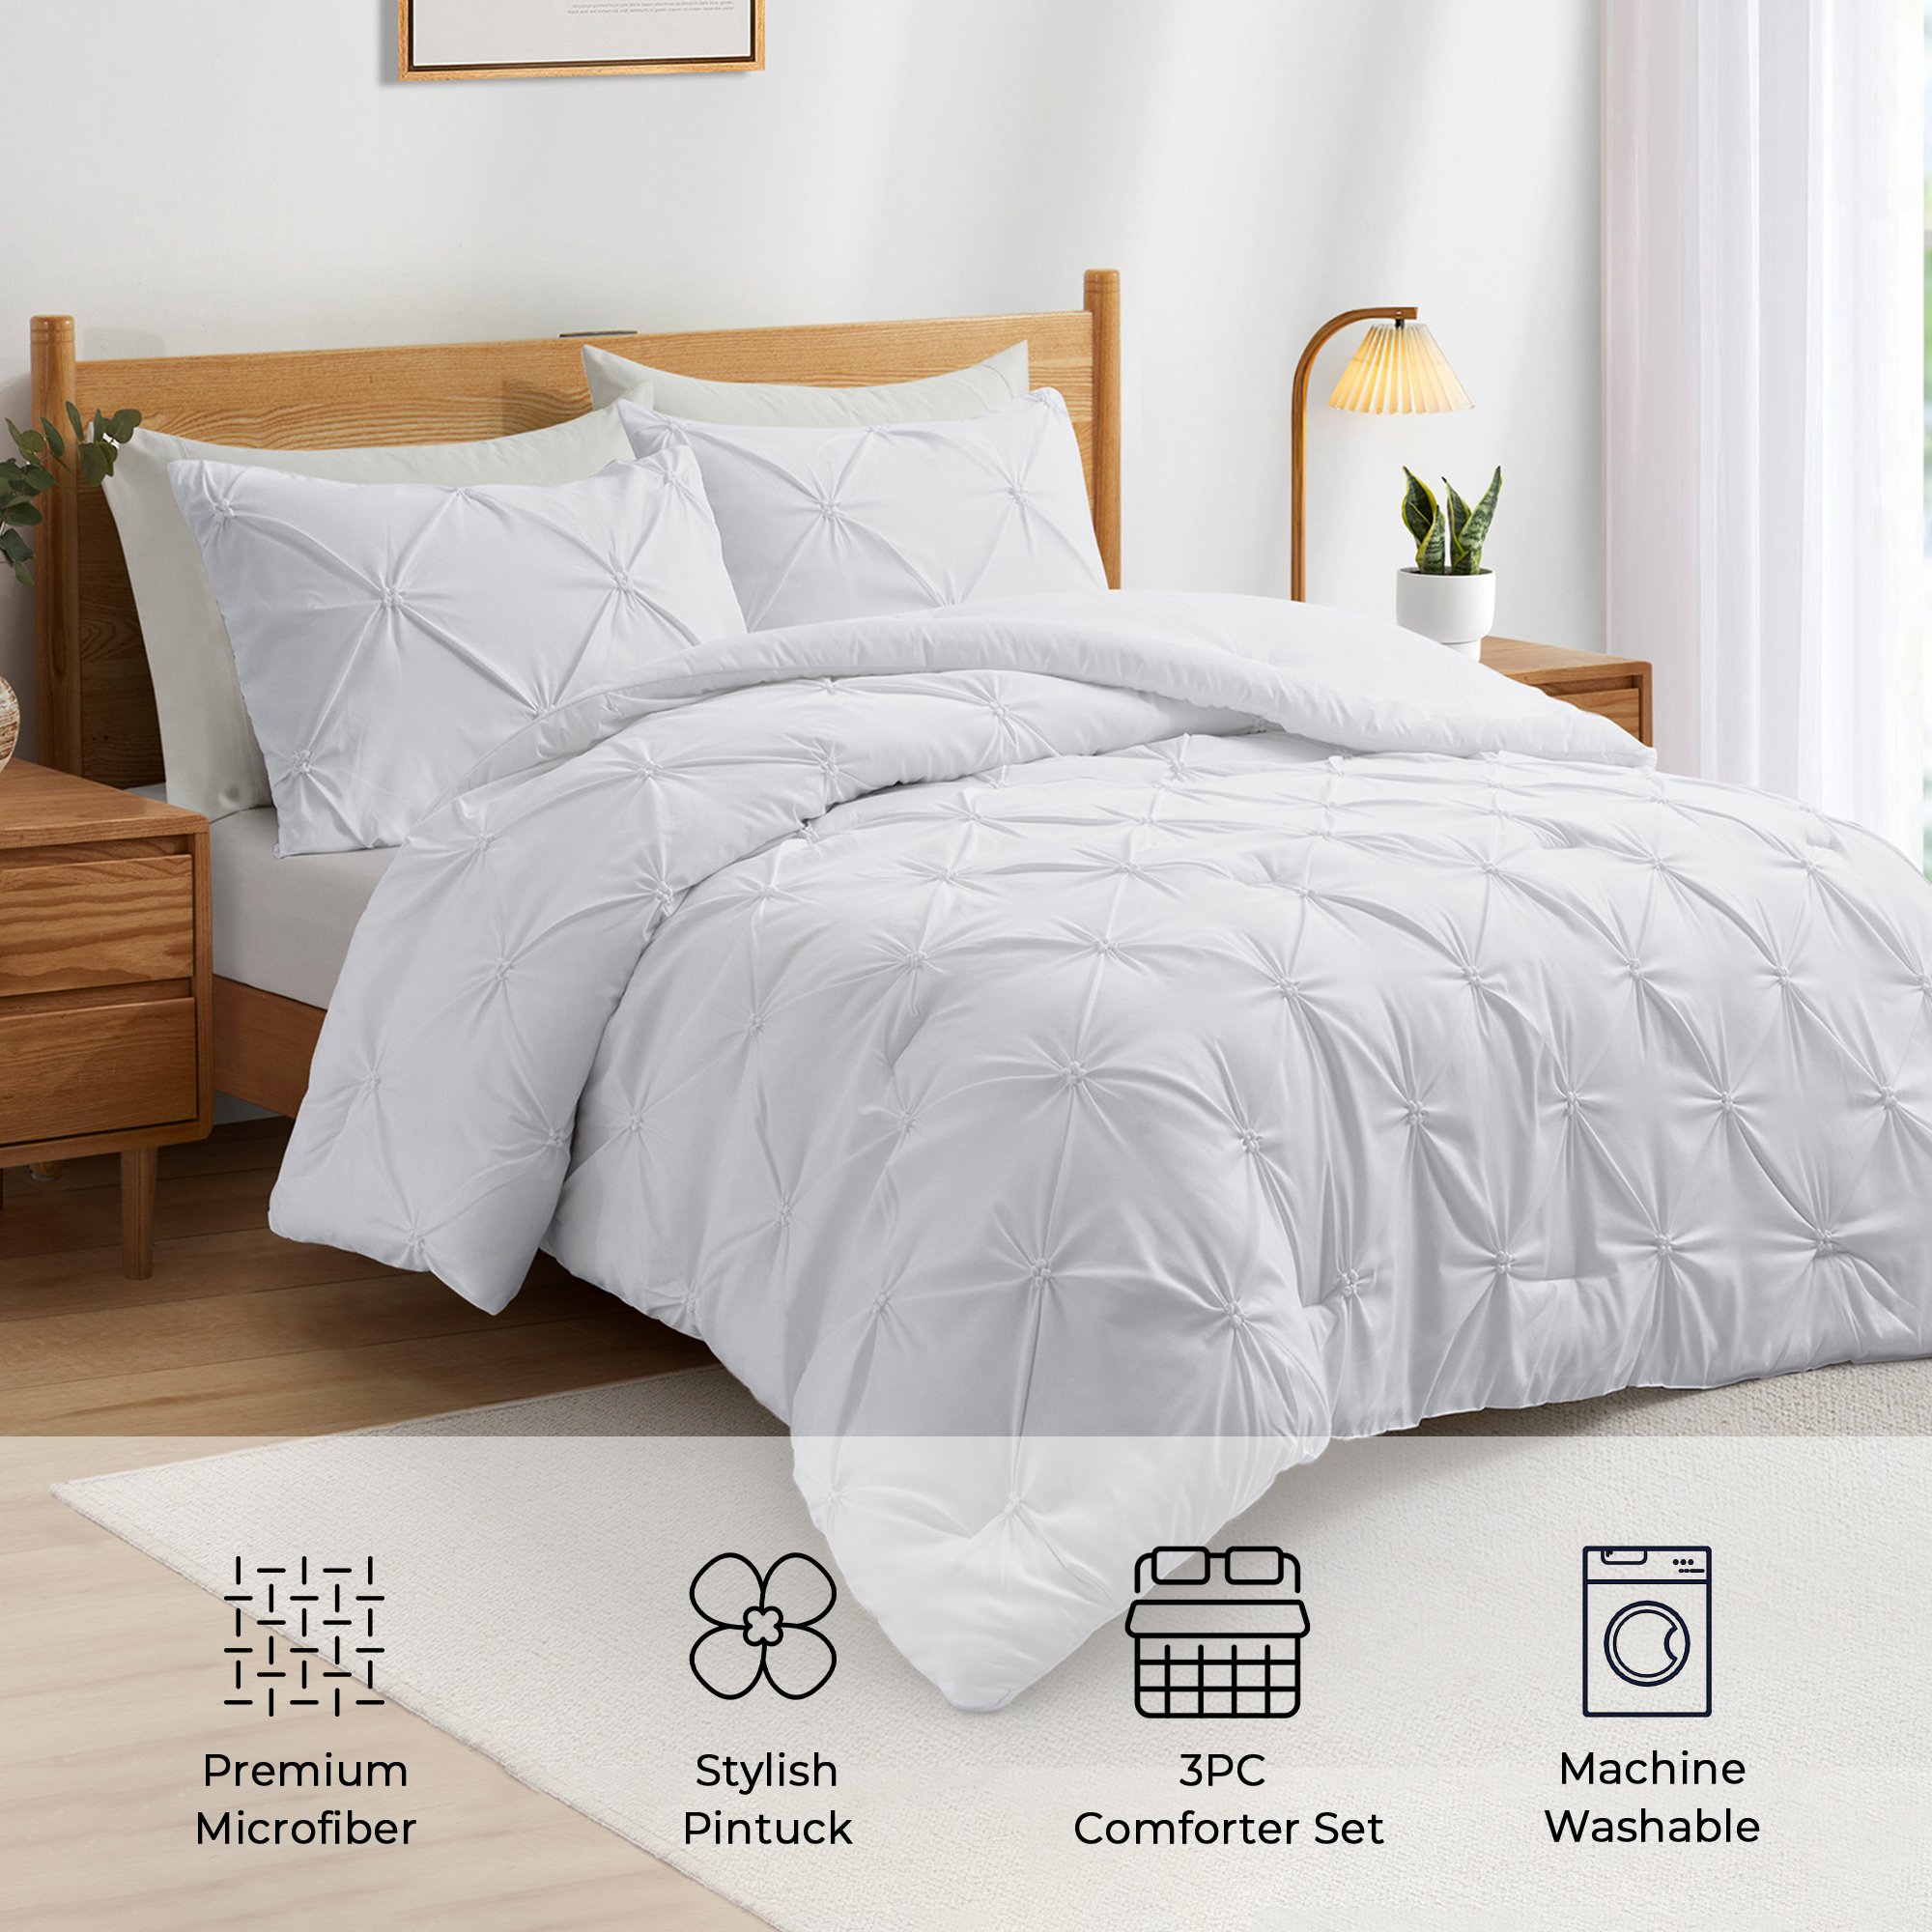 3-Piece Comforter Set Pintuck Pinch Pleat Ultra-Soft Down Alternative Comforter - Full/Queen Size